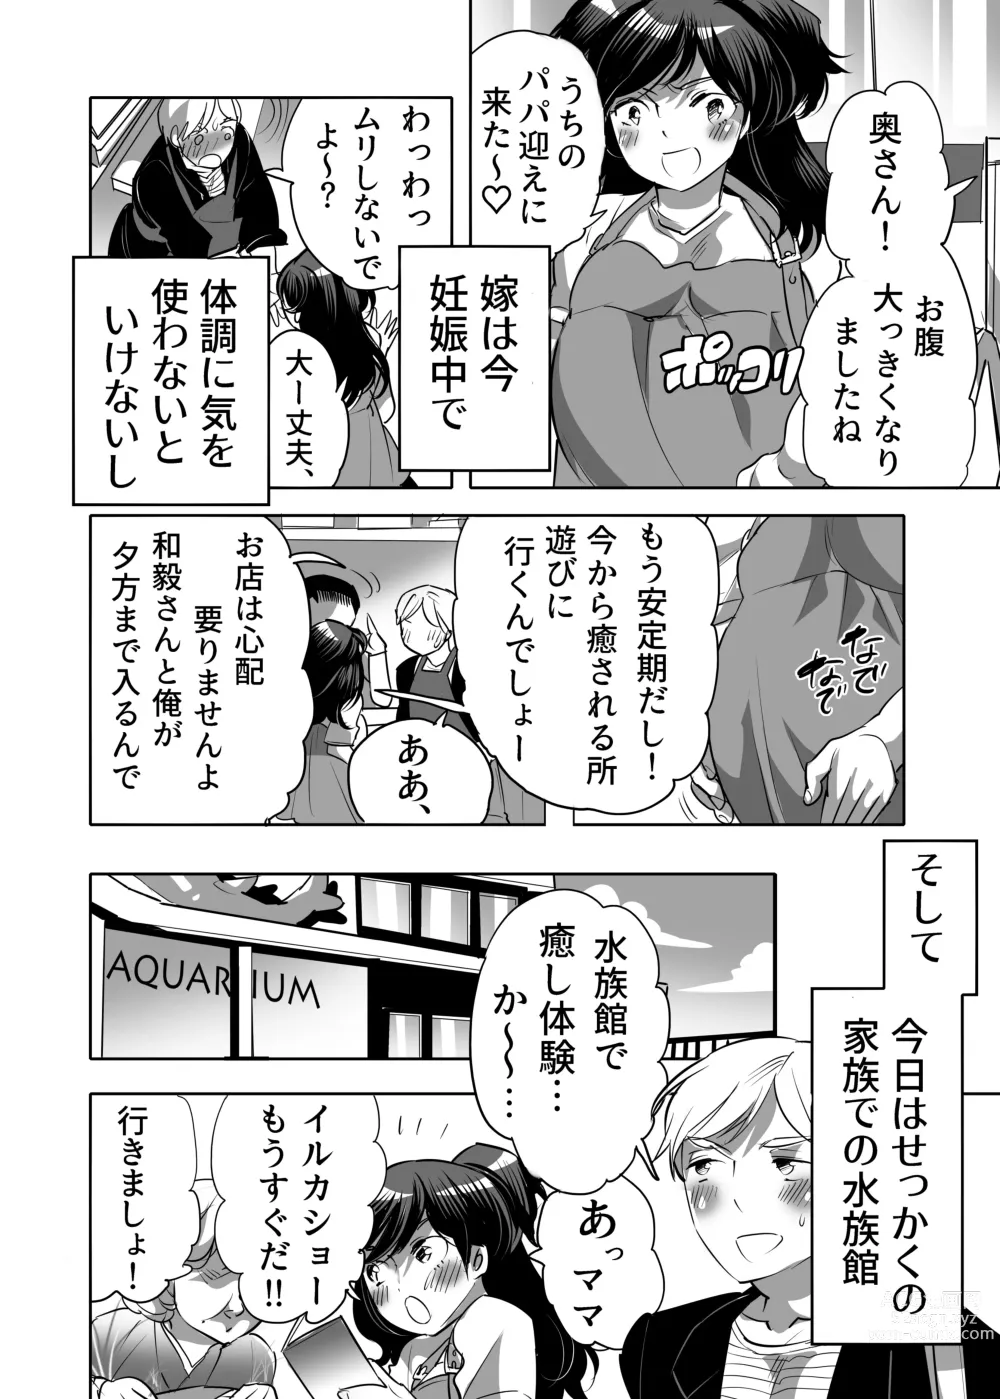 Page 6 of manga Abuso OK Prisionero Niño